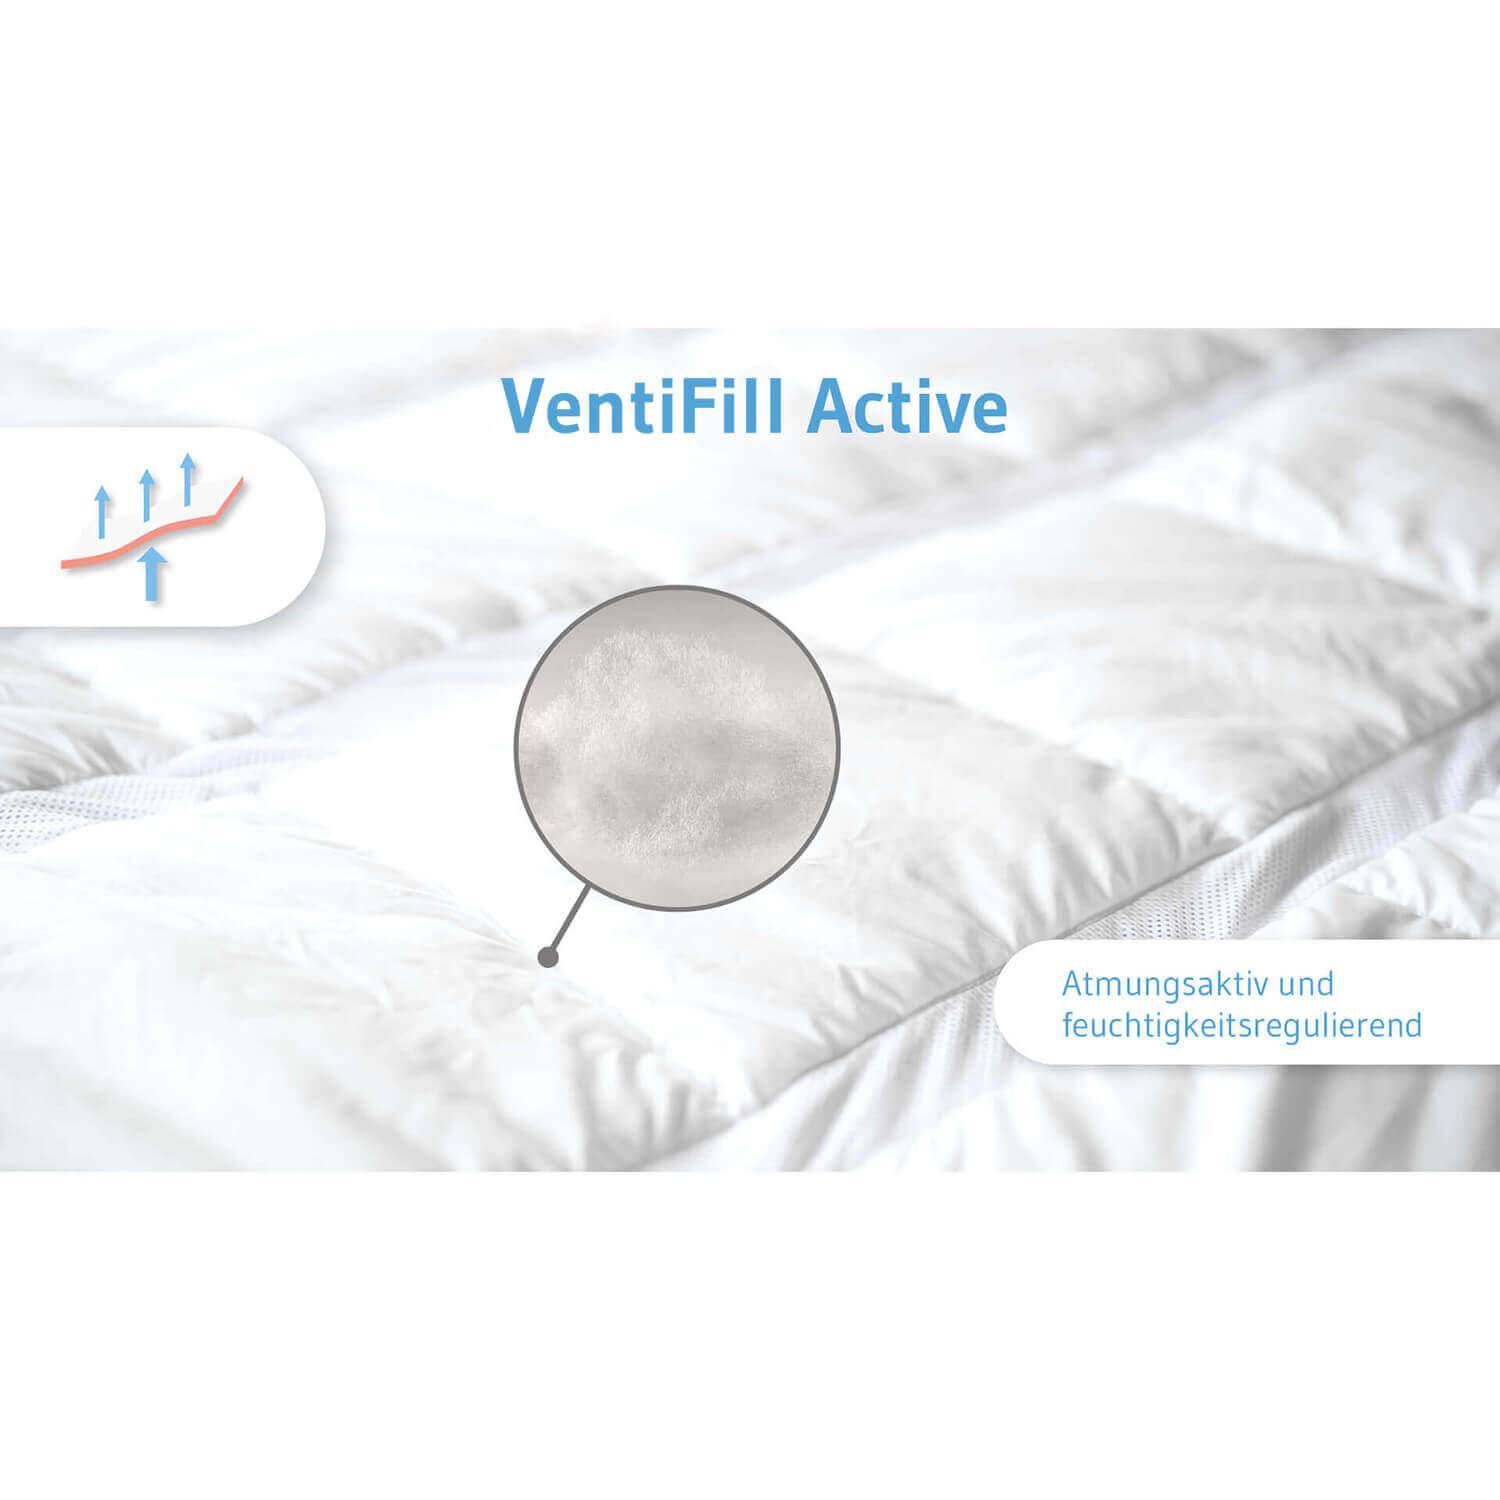 AERO ActiveClima Ganzjahresdecke für Kinder  mit innovativer VentiFIll®-Technologie - Third of Life